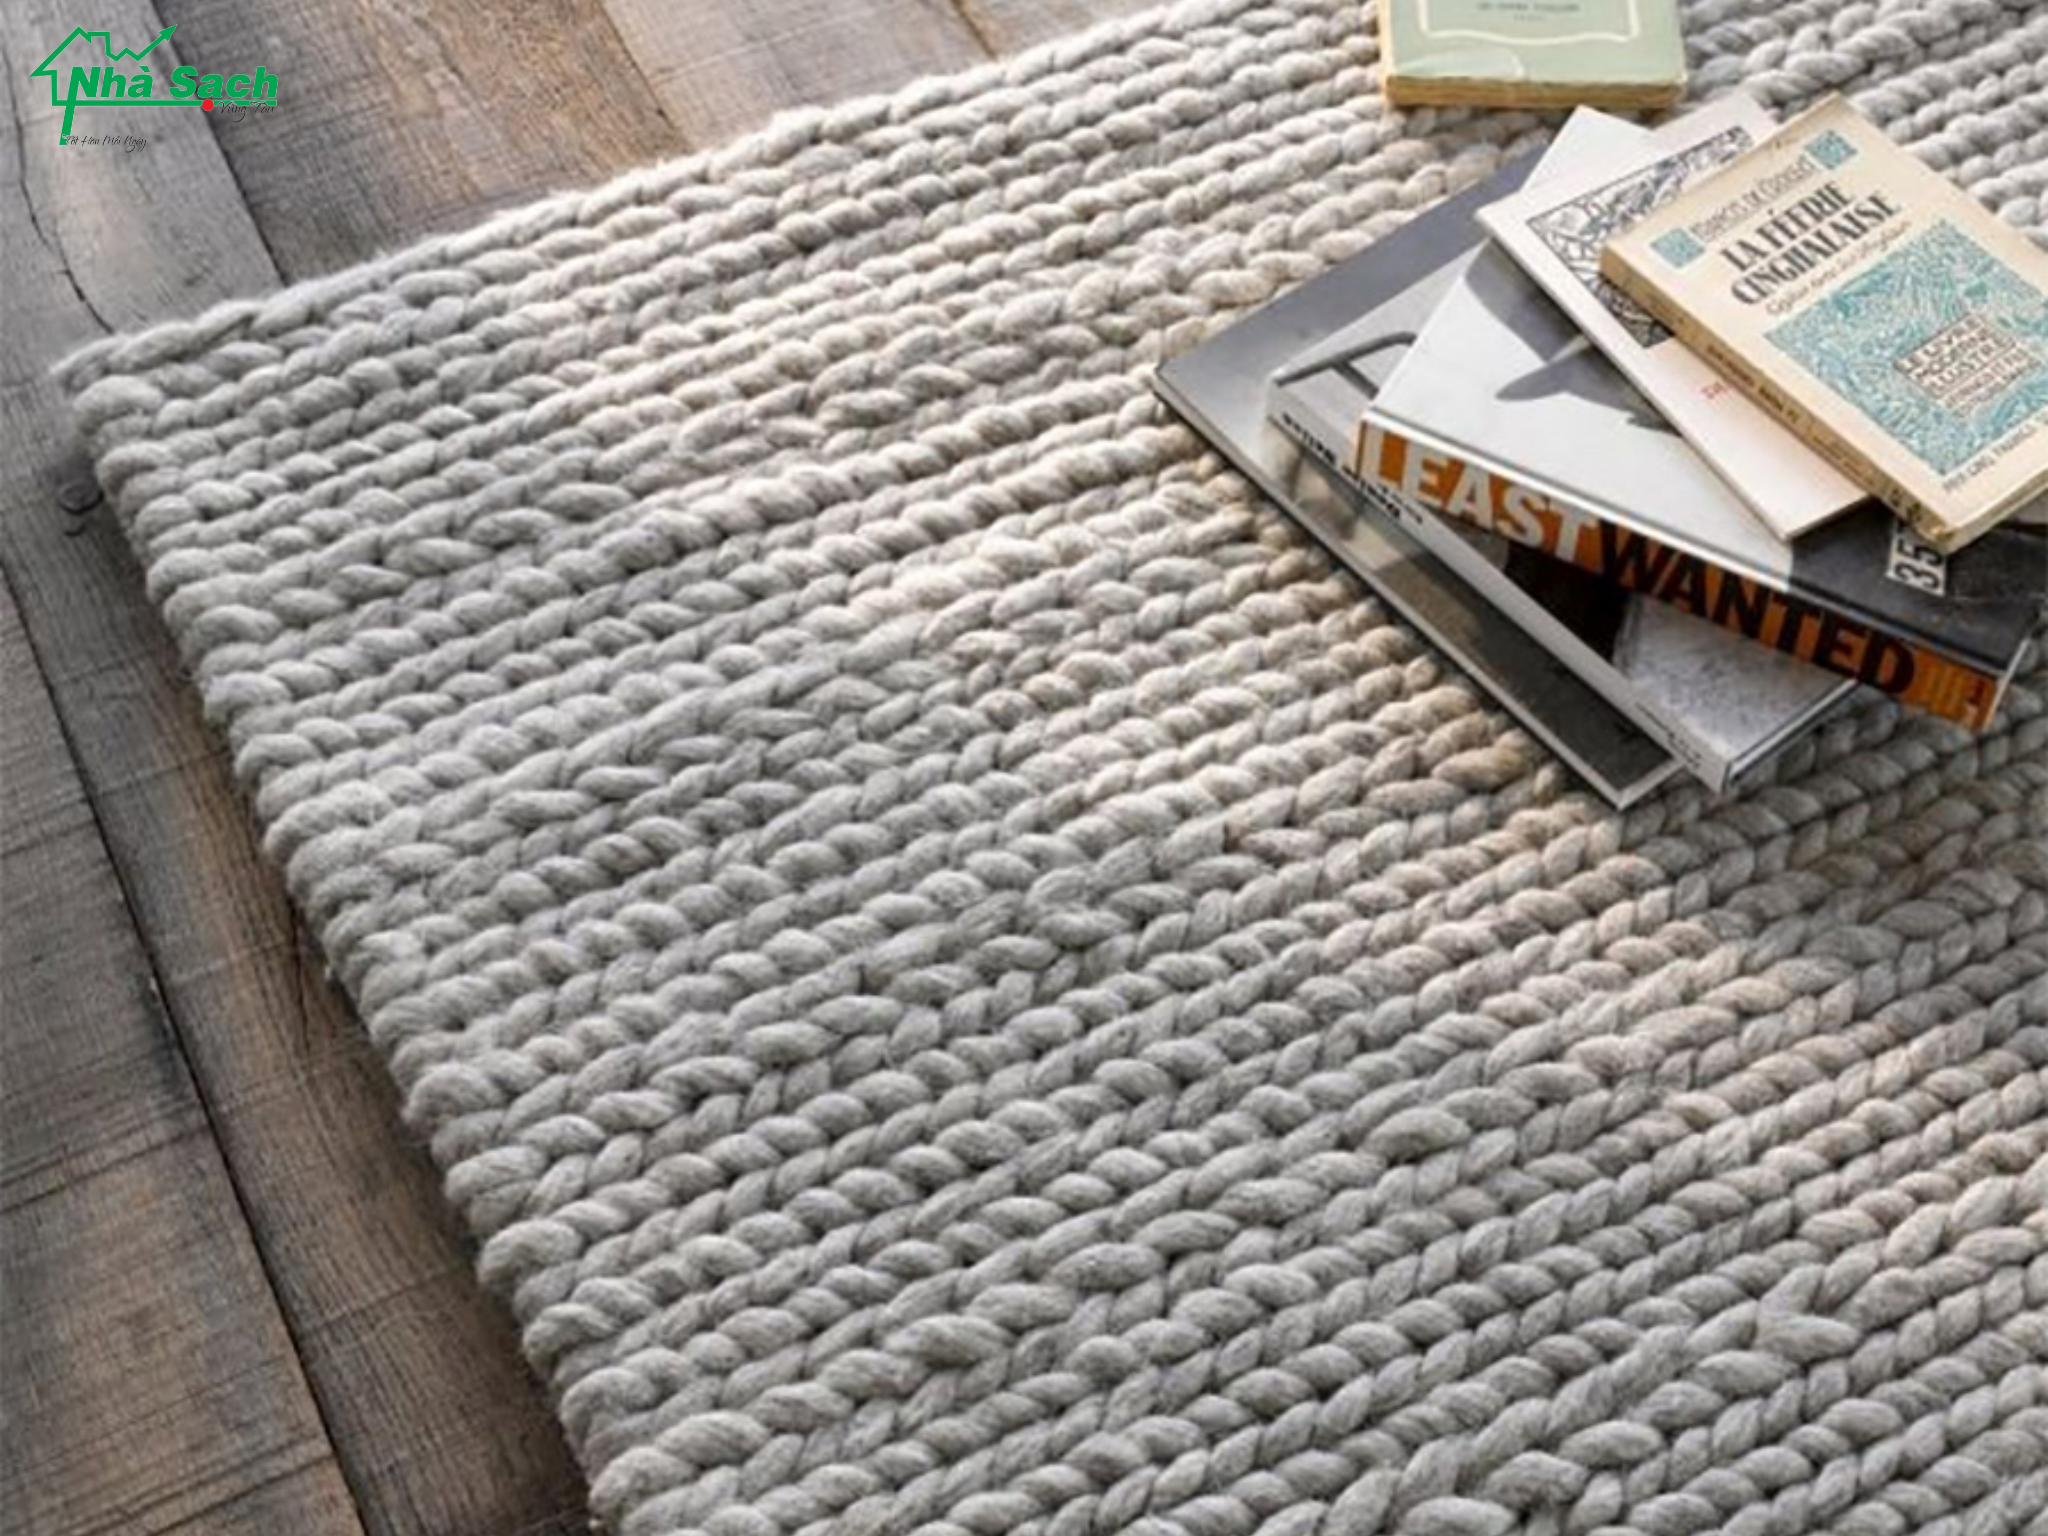 Giặt thảm len đúng cách giúp thảm luôn bền, đẹp như mới